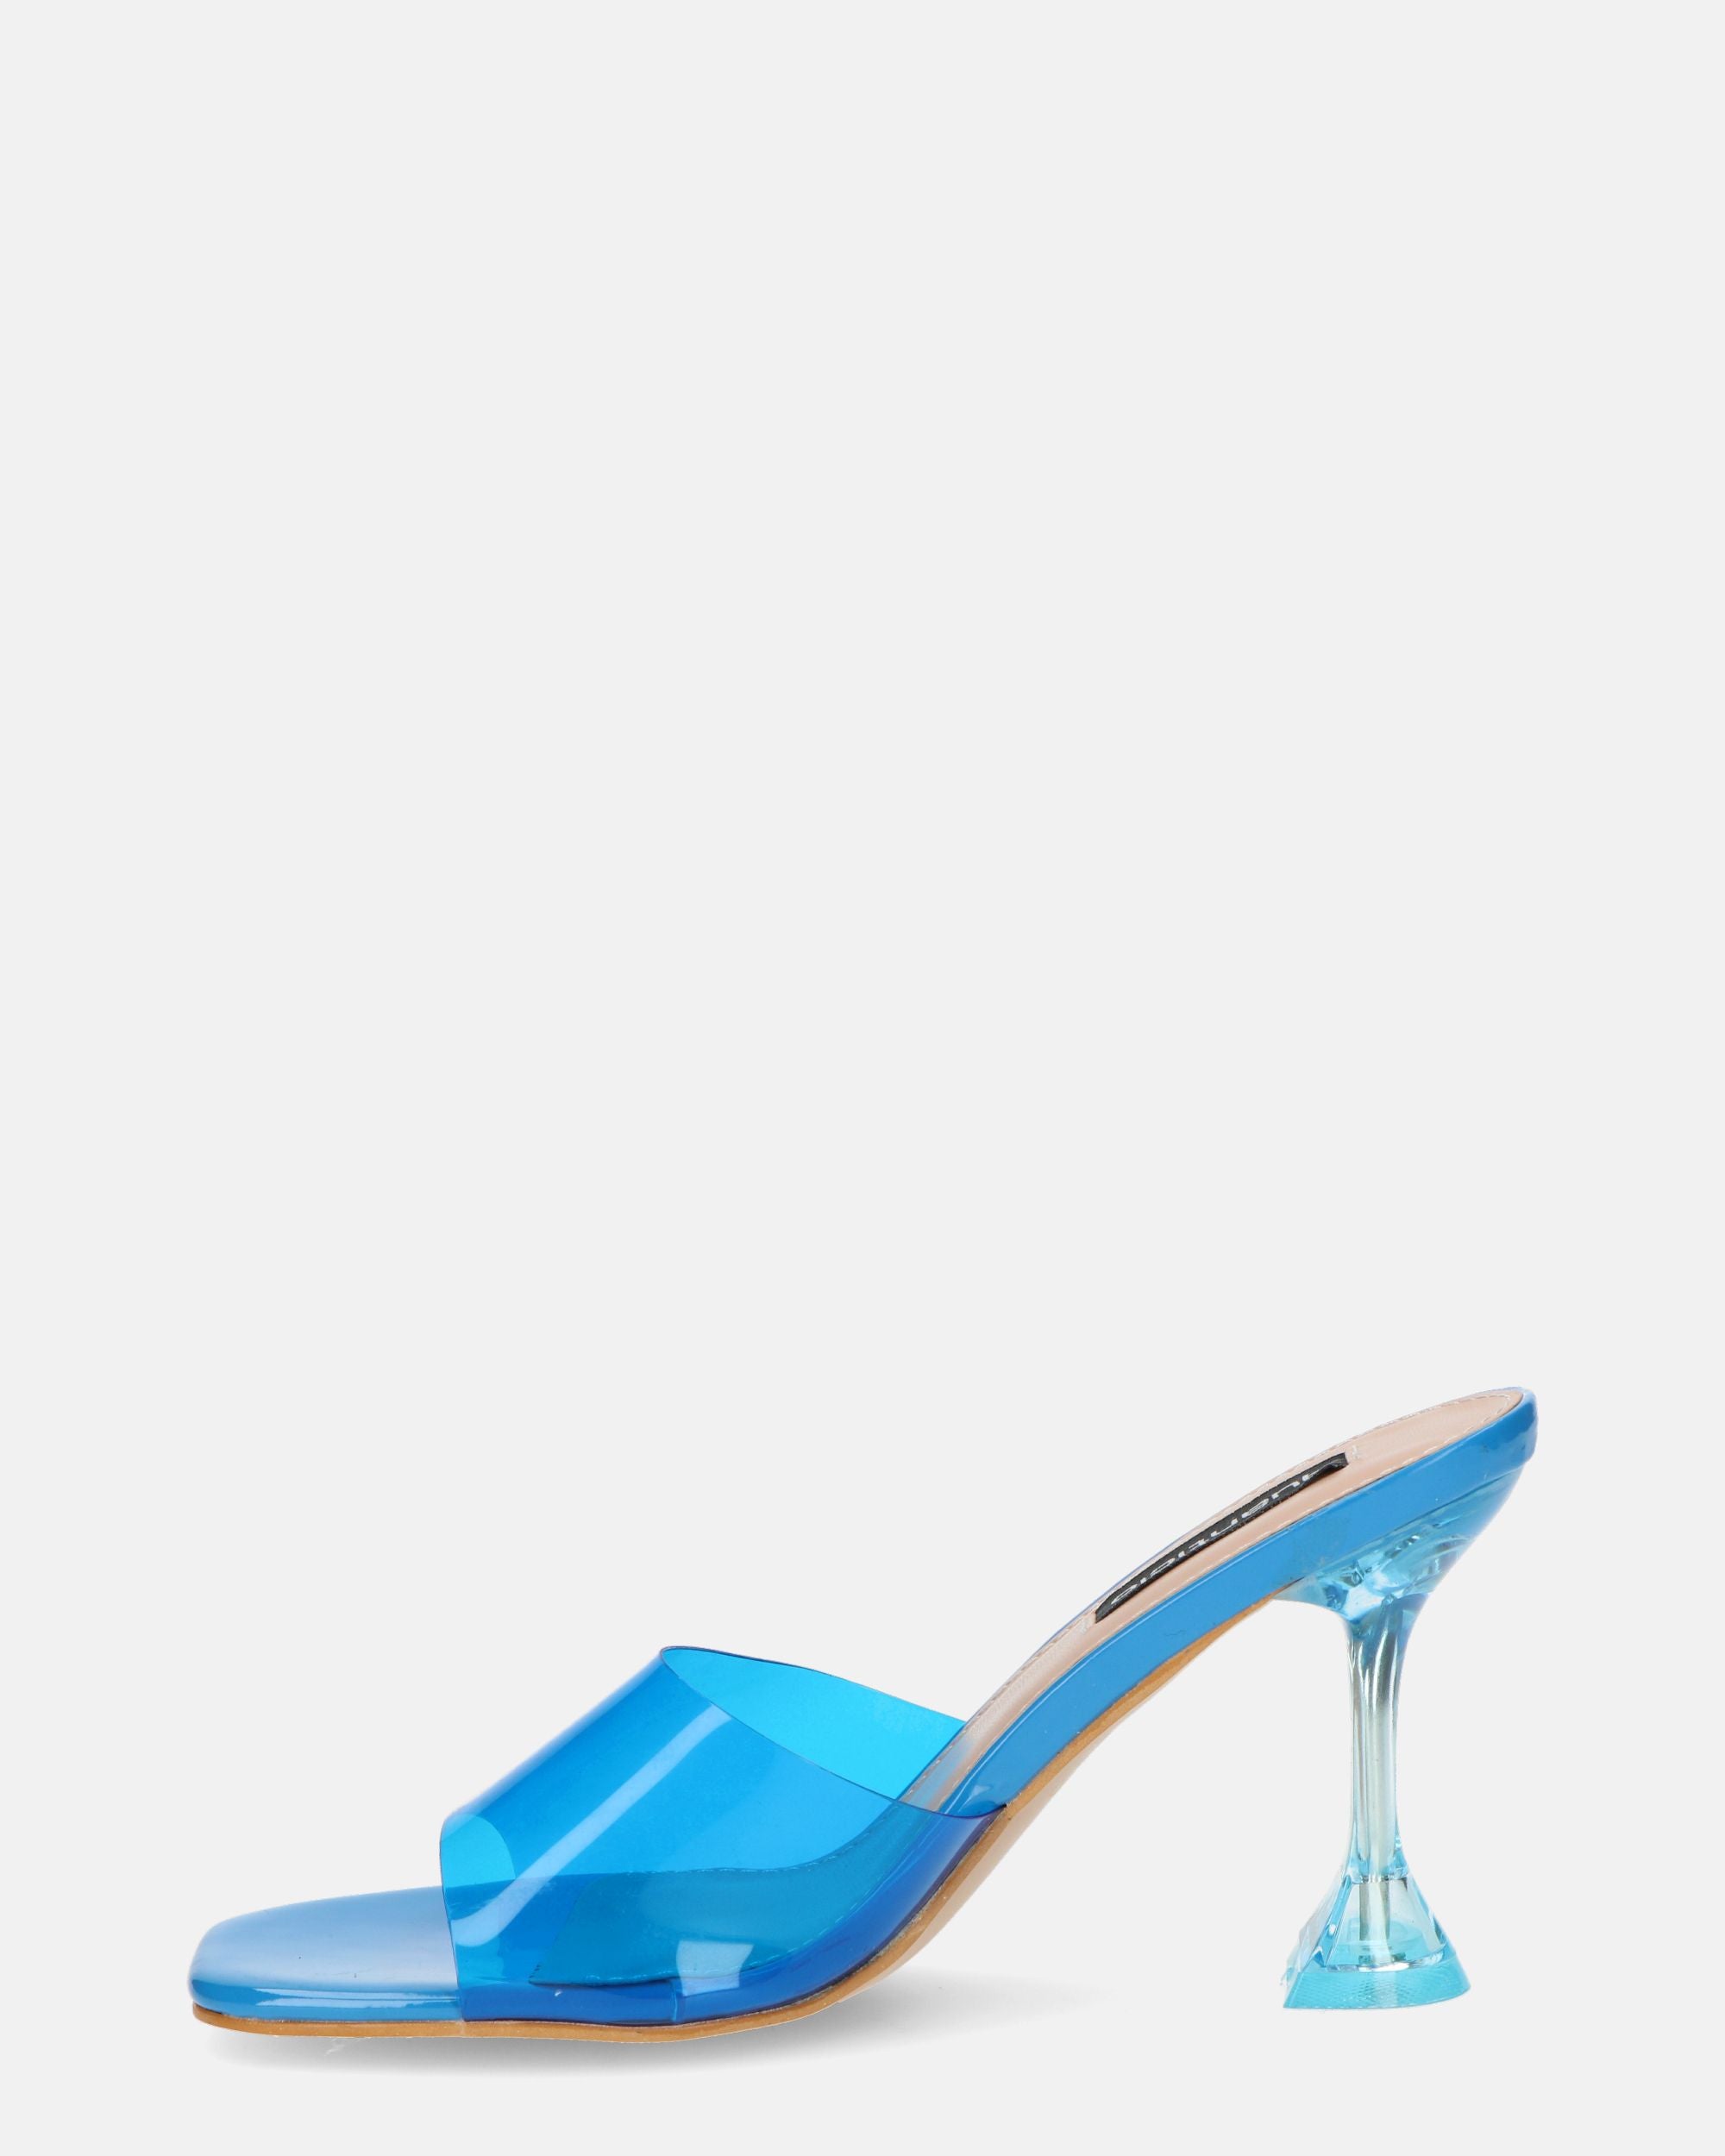 FIAMMA - sandalia de tacón en perspex azul con suela de PU